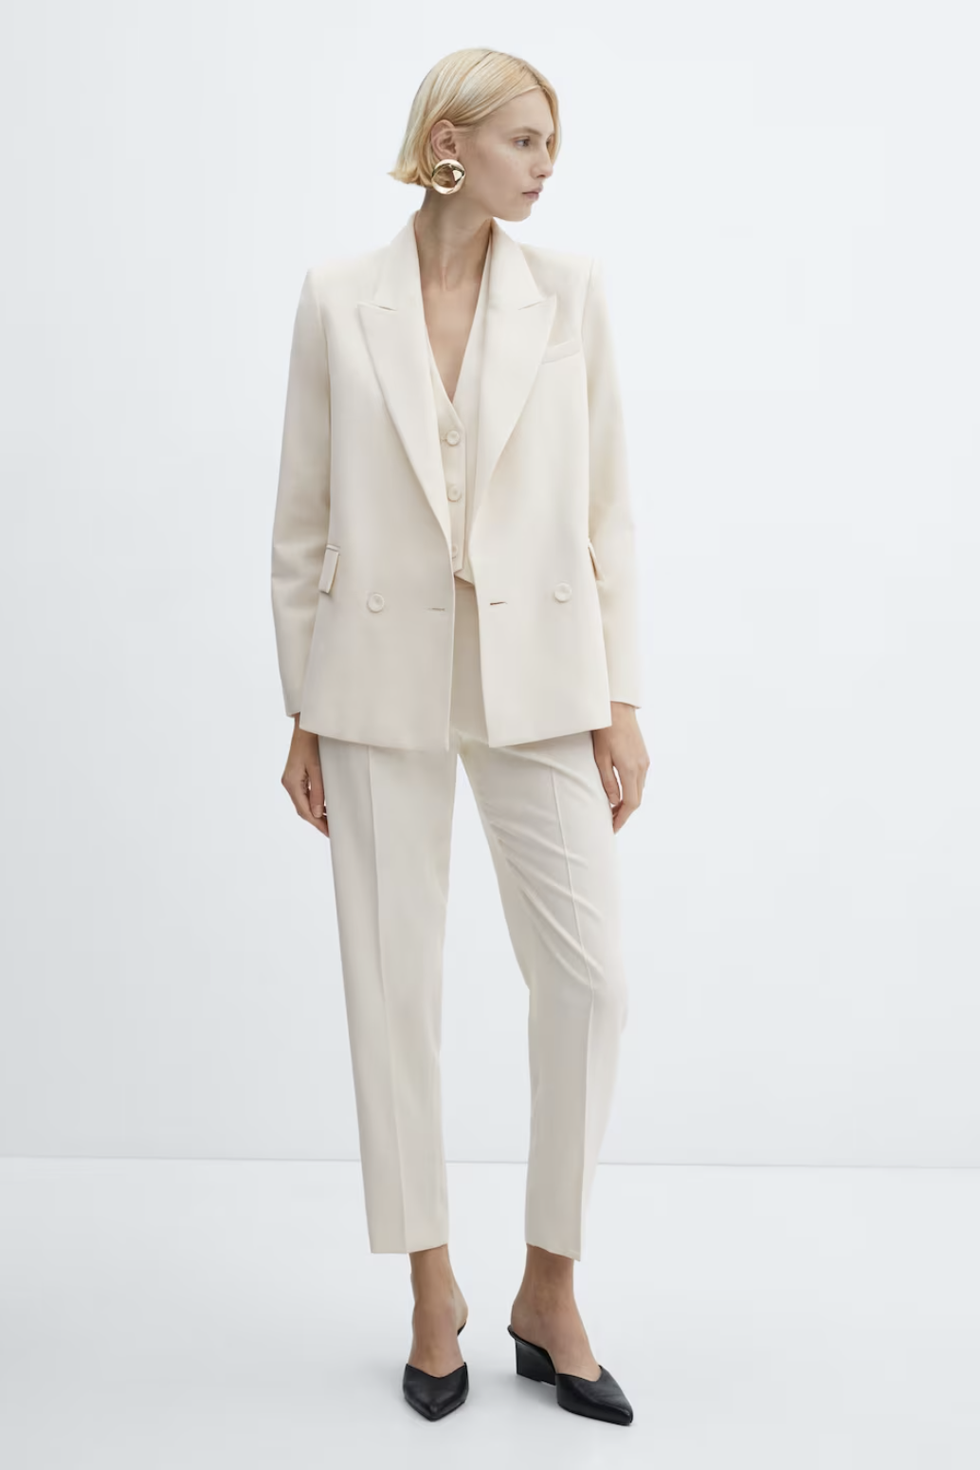 Le Suit Women's Jacket/Pant Suit, Camel, 18 : Clothing, Shoes & Jewelry 